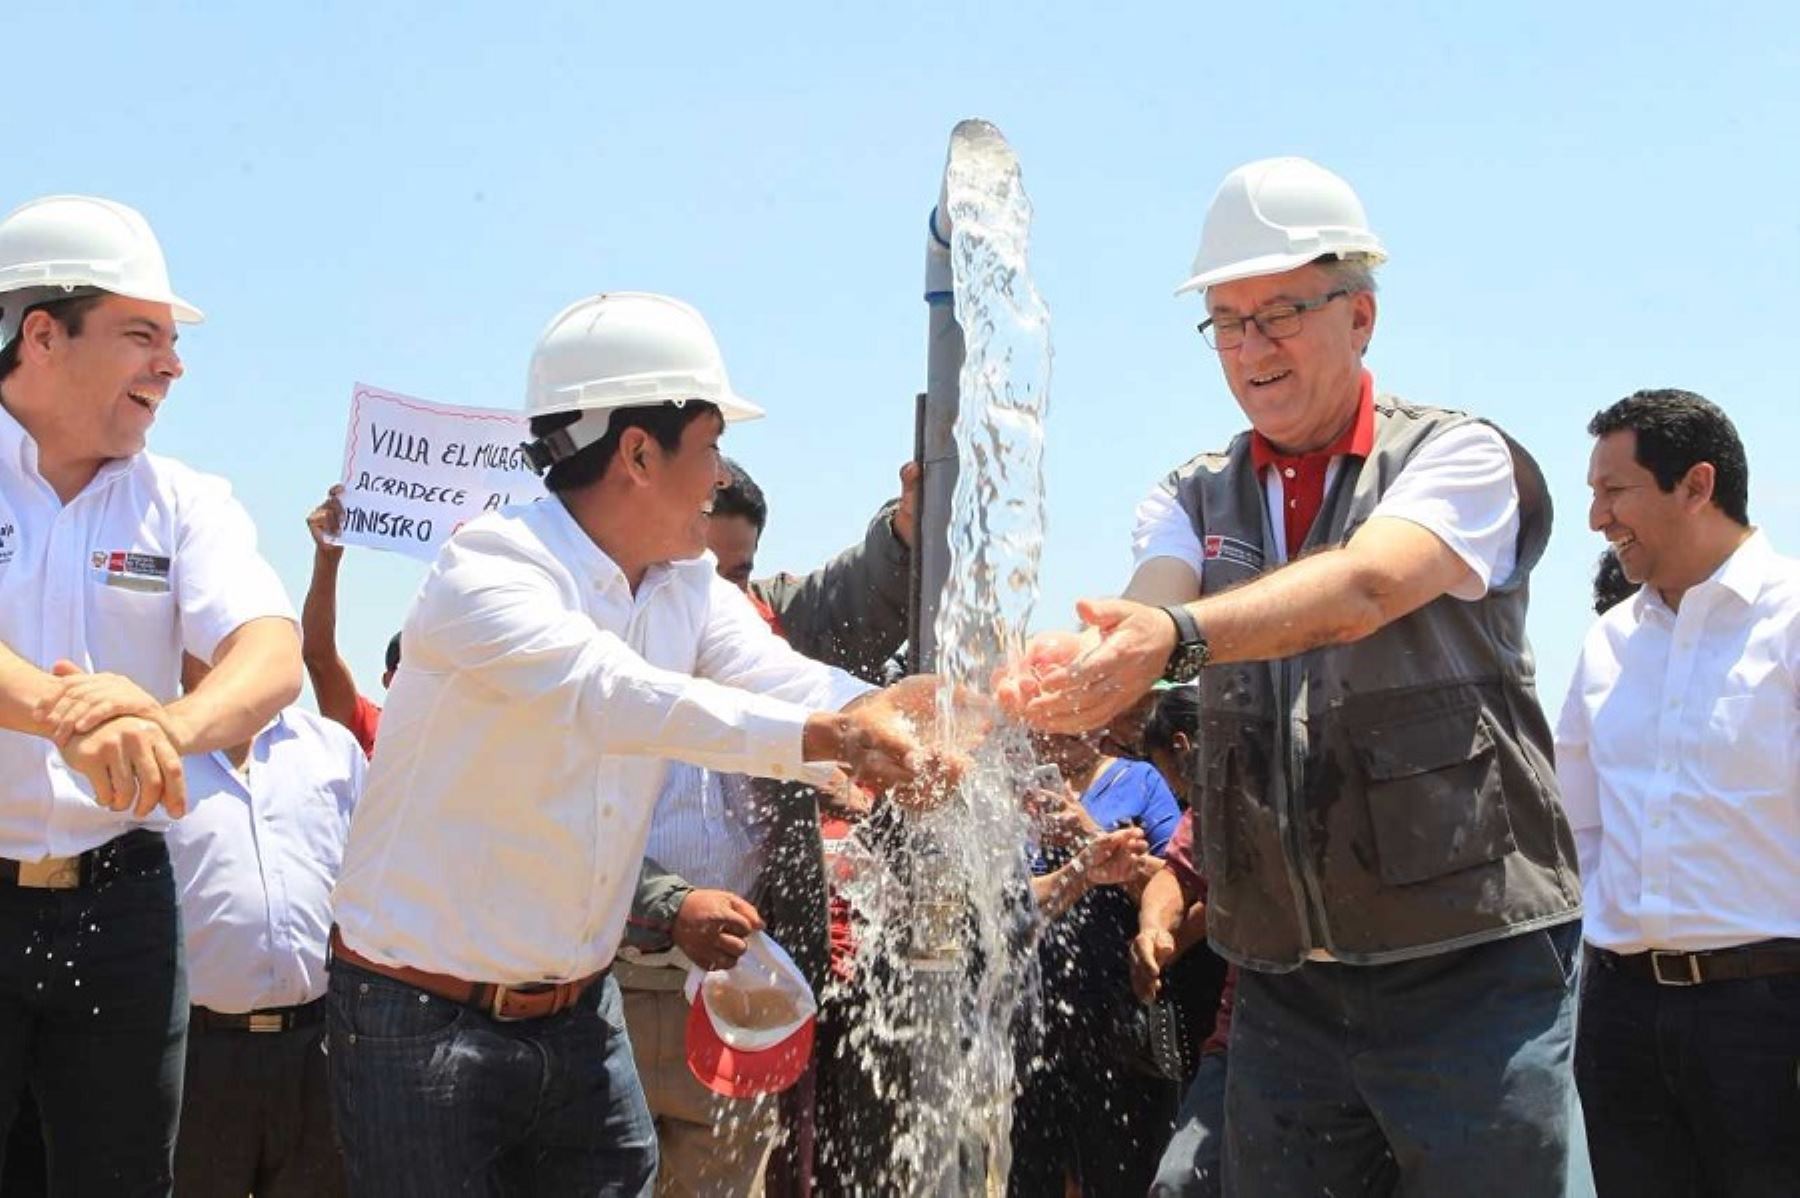 Más de 2.5 millones de soles invirtió el Ministerio de Trabajo y Promoción del Empleo (MTPE), a través de su programa Trabaja Perú para generar 1,688 empleos temporales en Lambayeque durante la actual gestión gubernamental.